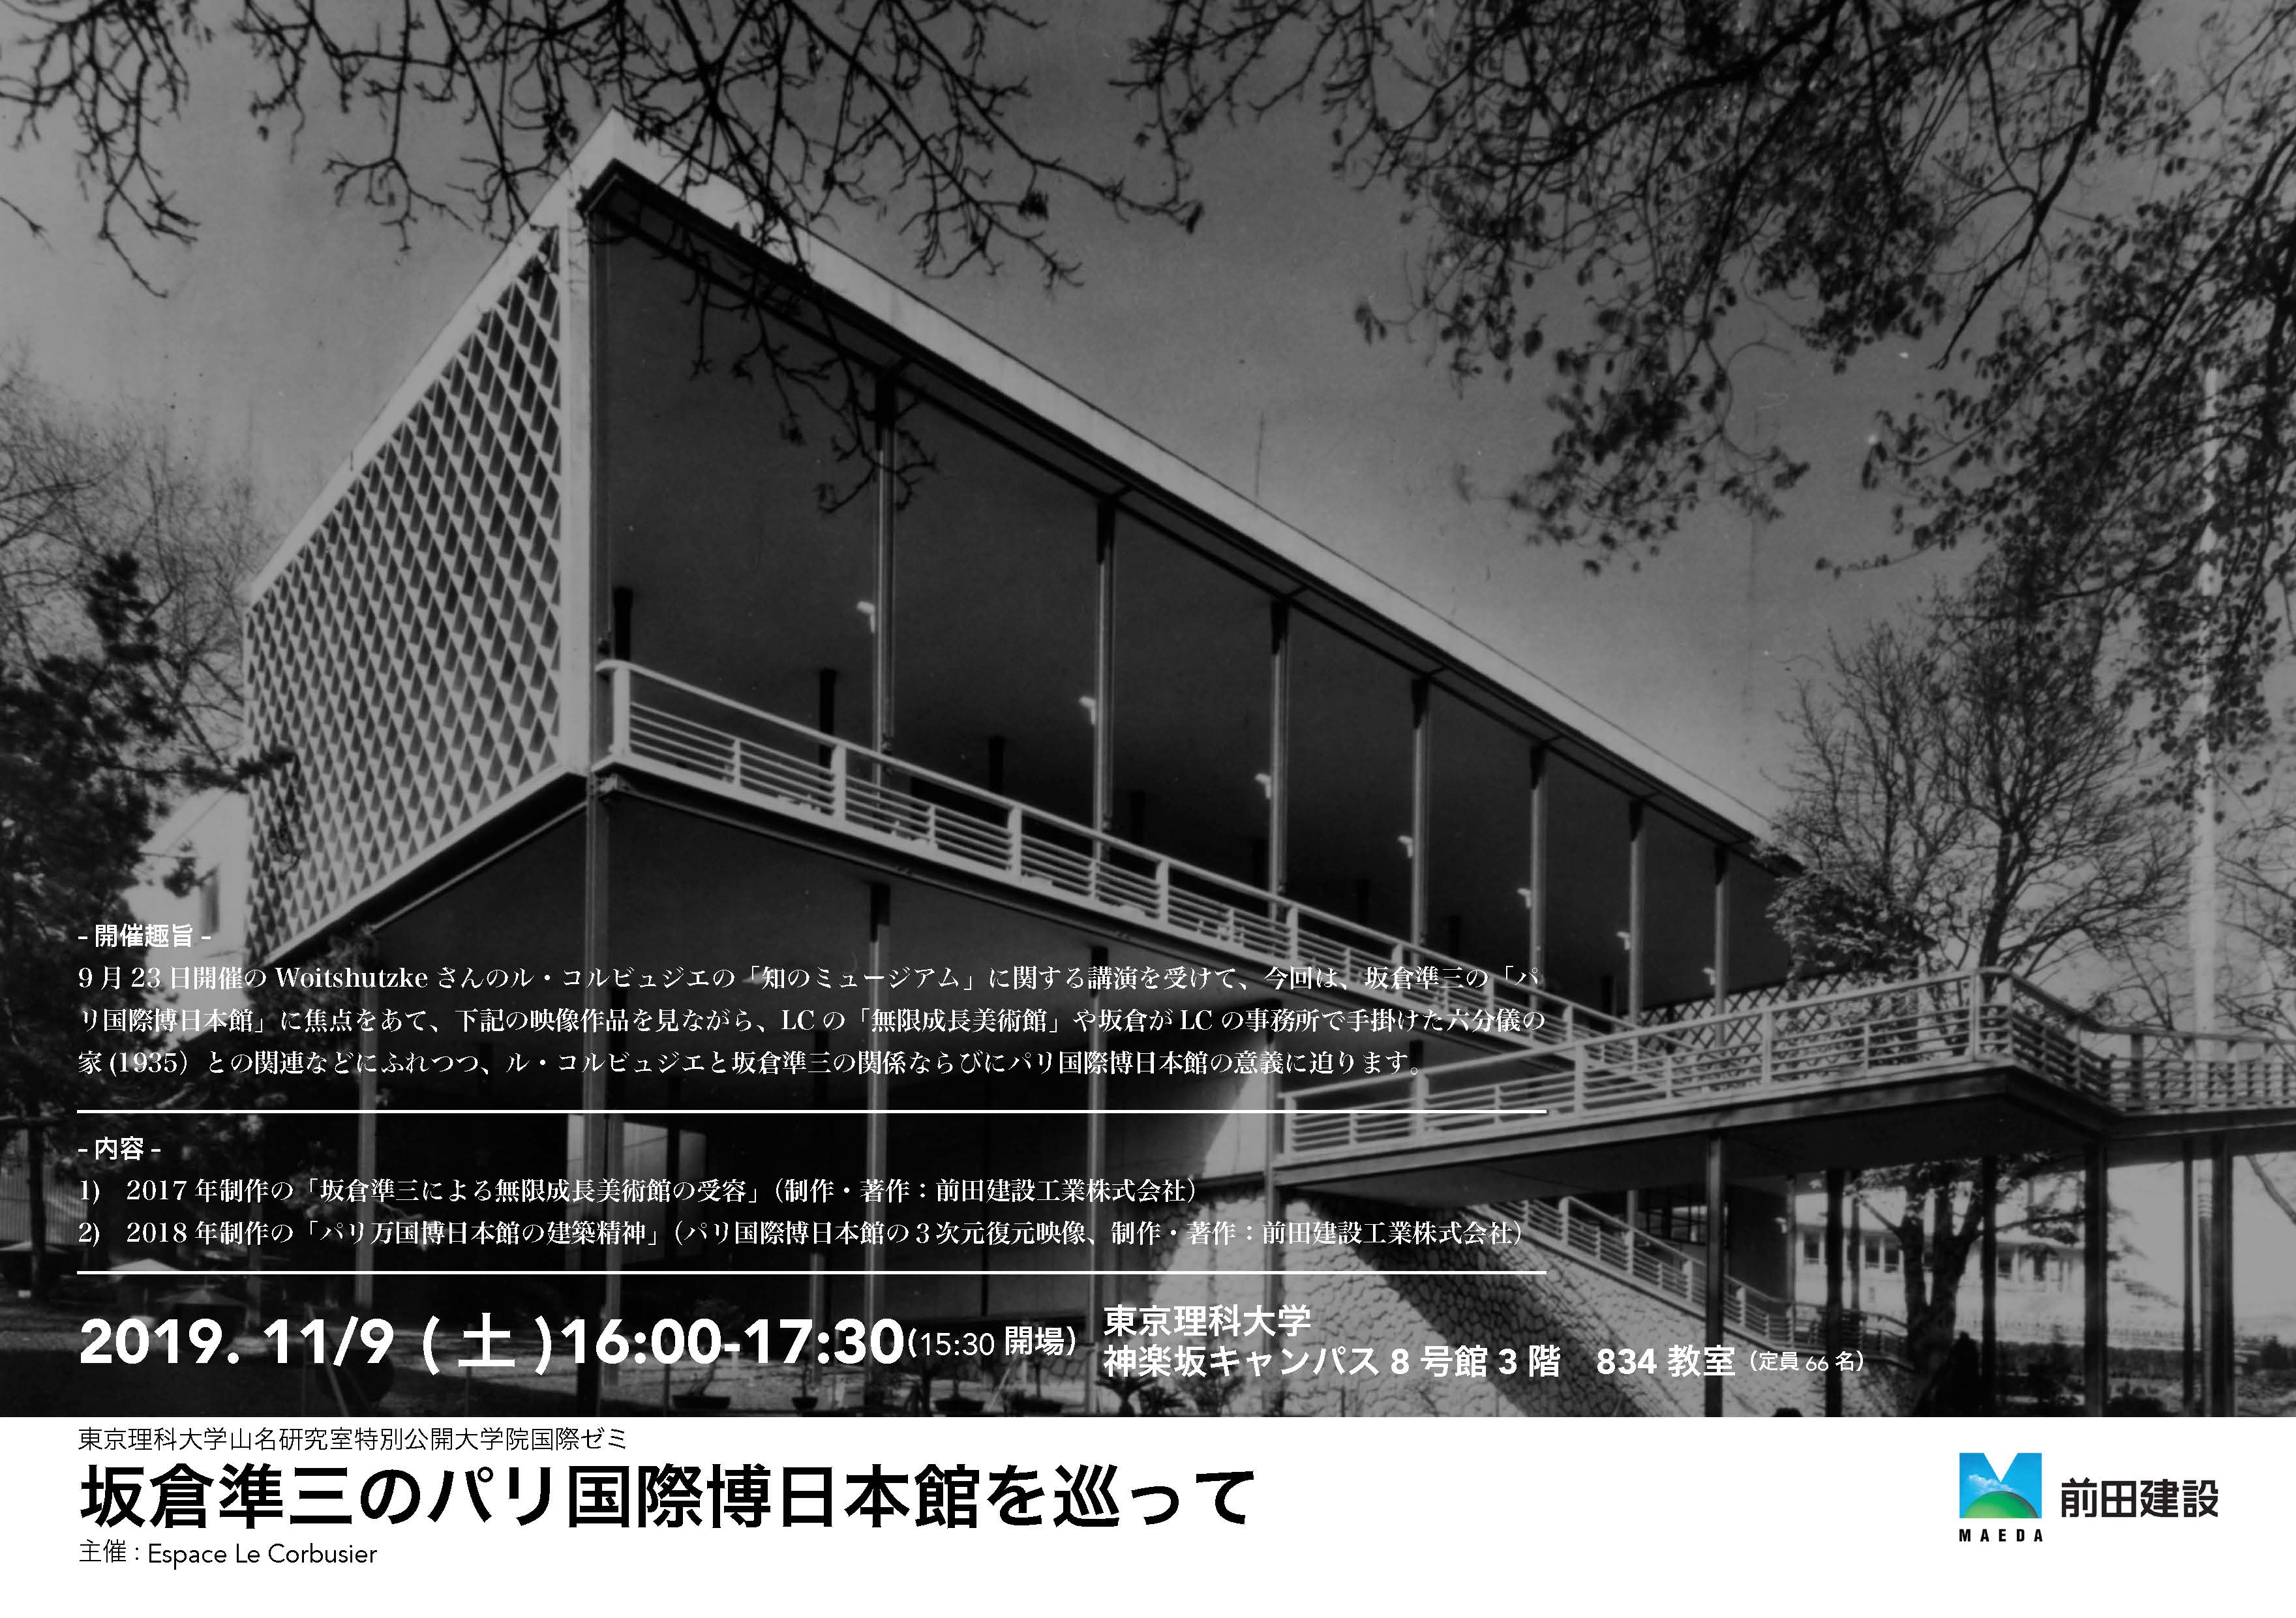 「坂倉準三のパリ国際博日本館を巡って」にて映像が放映されます